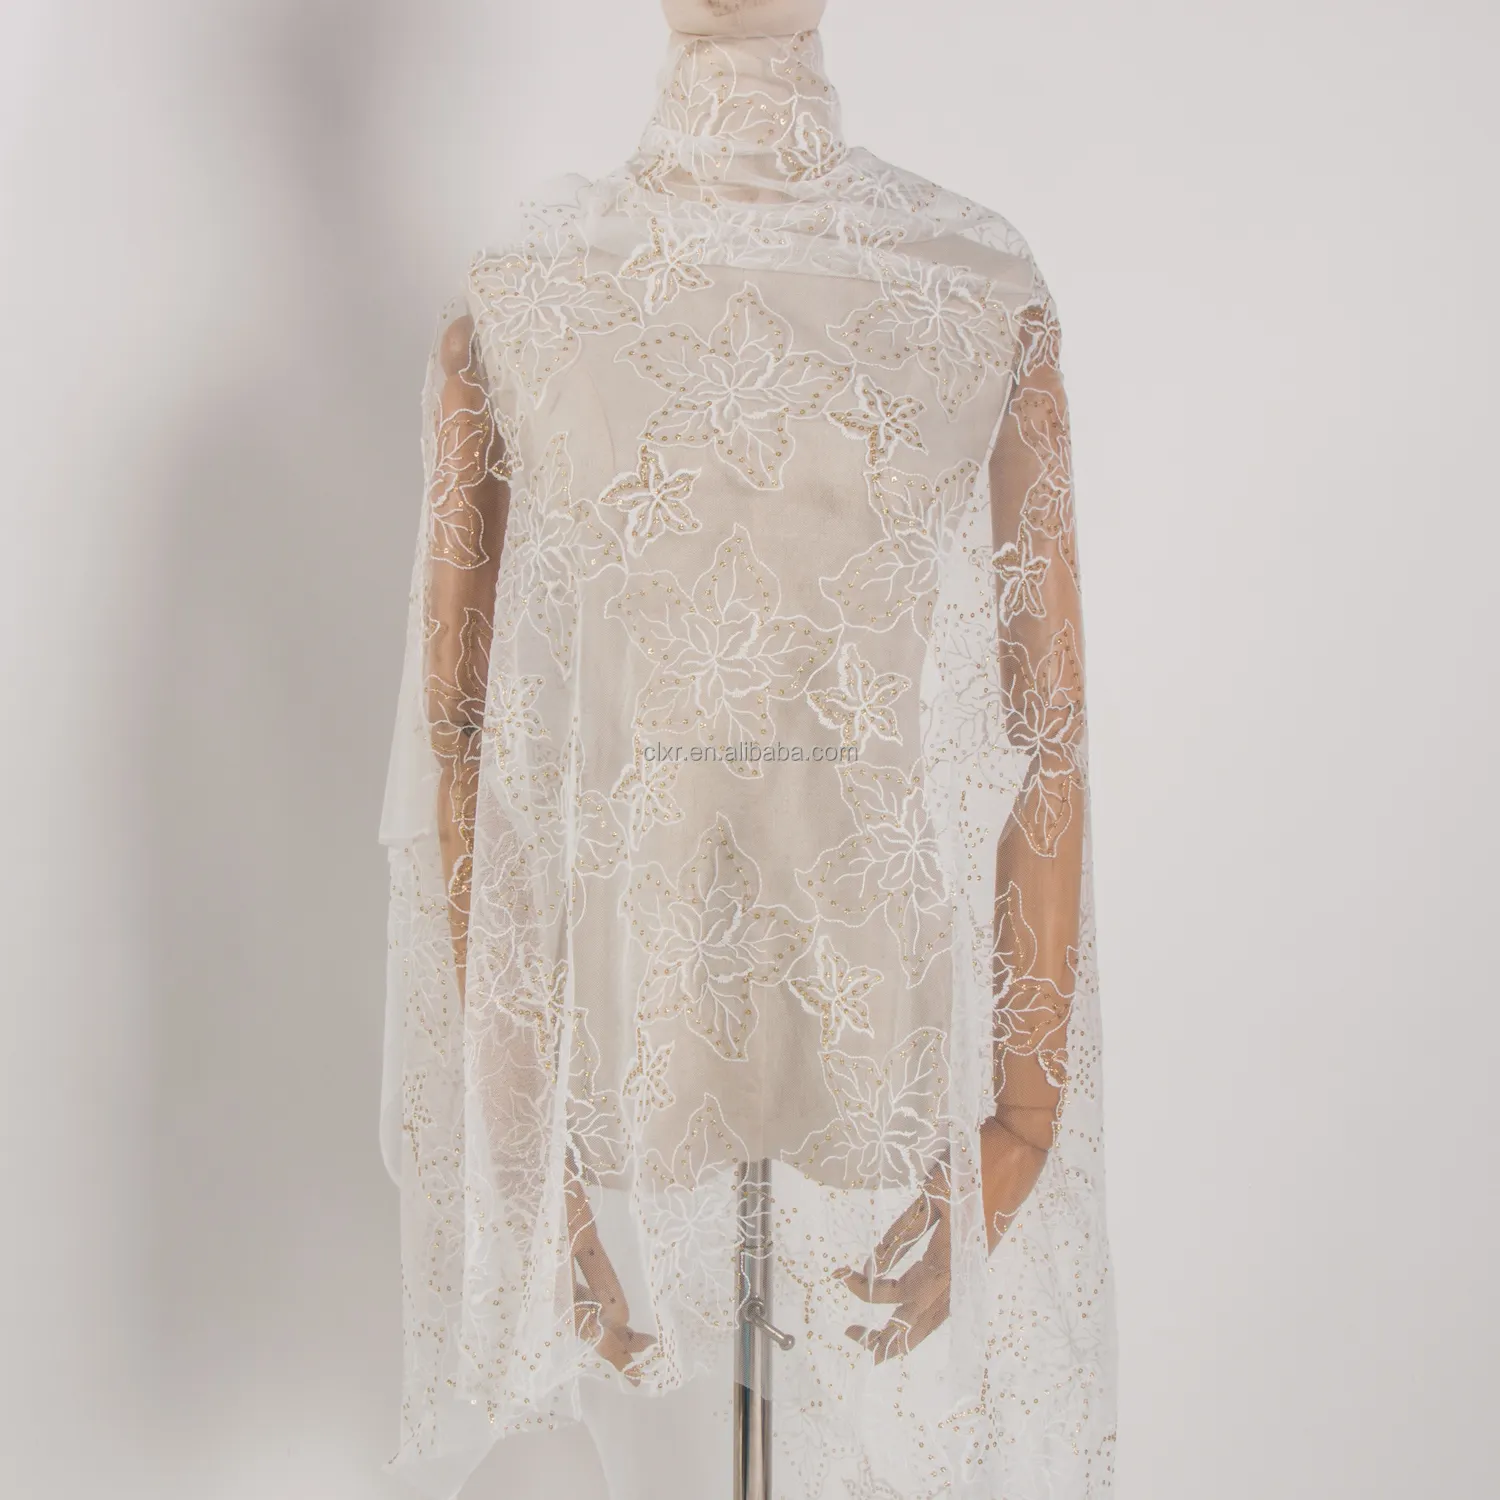 チュールレース刺Embroideryスパンコールソフトメッシュハニカムチュールドレスイブニングドレス用スパンコール生地